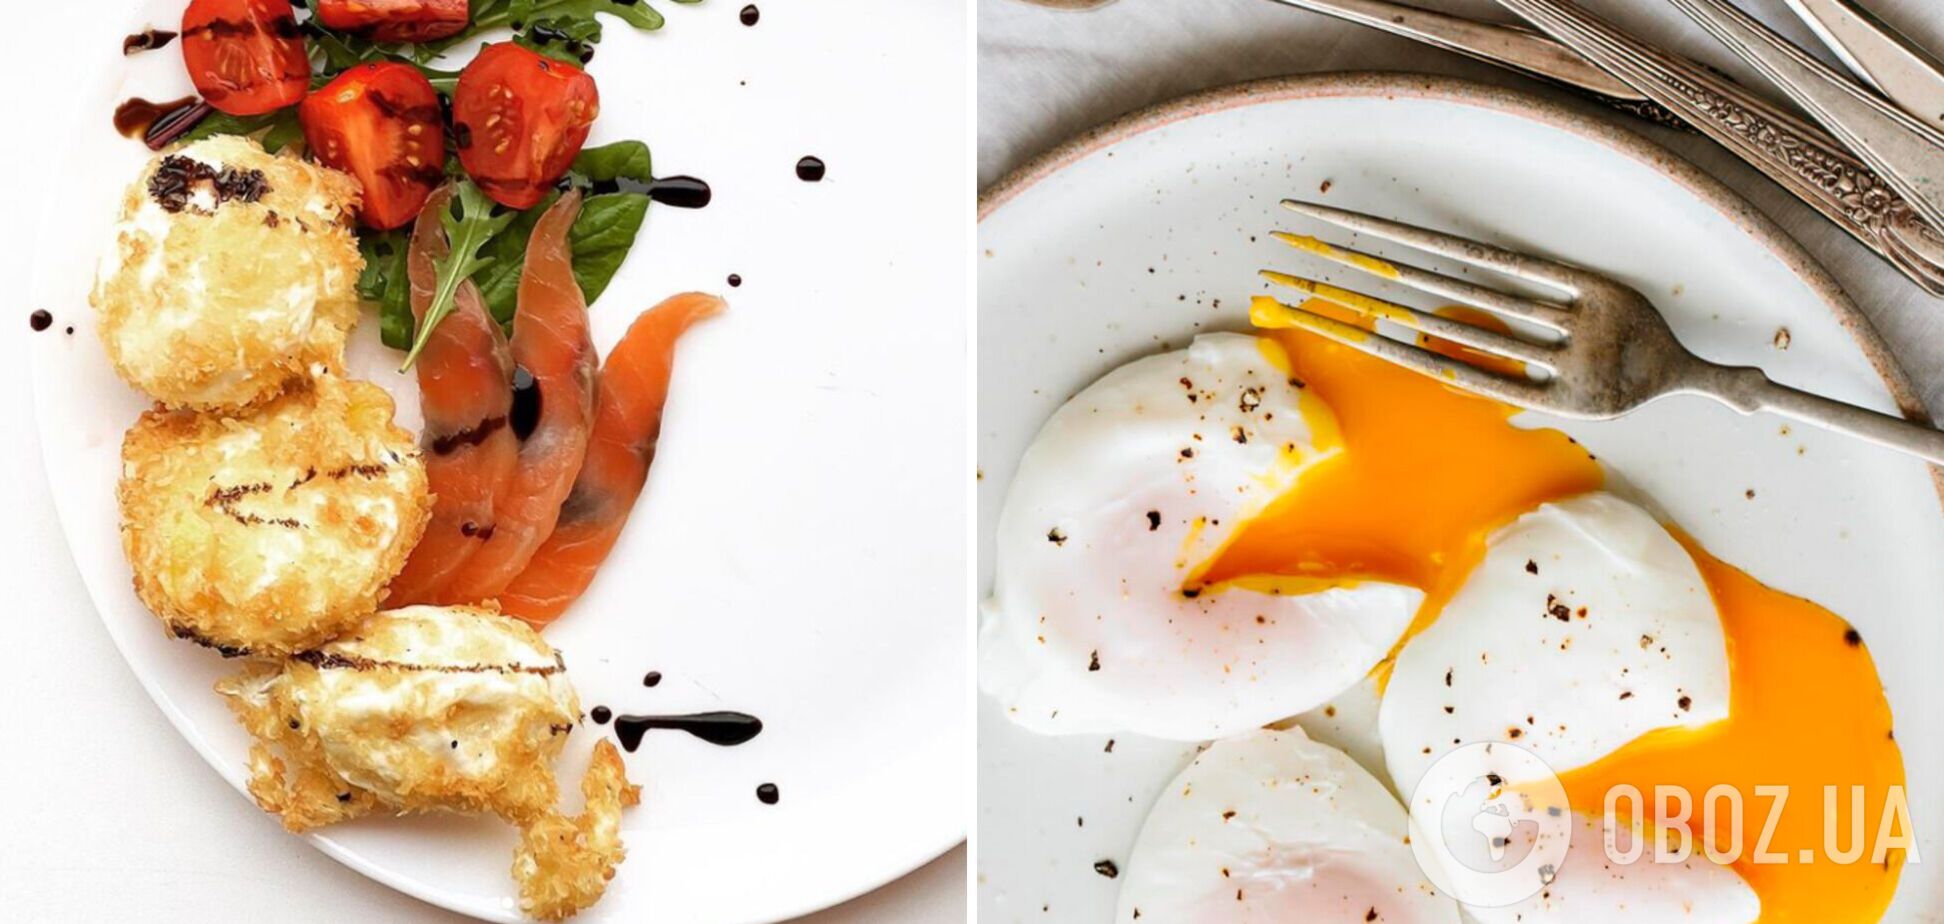 Вишукане яйце пашот у клярі: як приготувати популярний сніданок